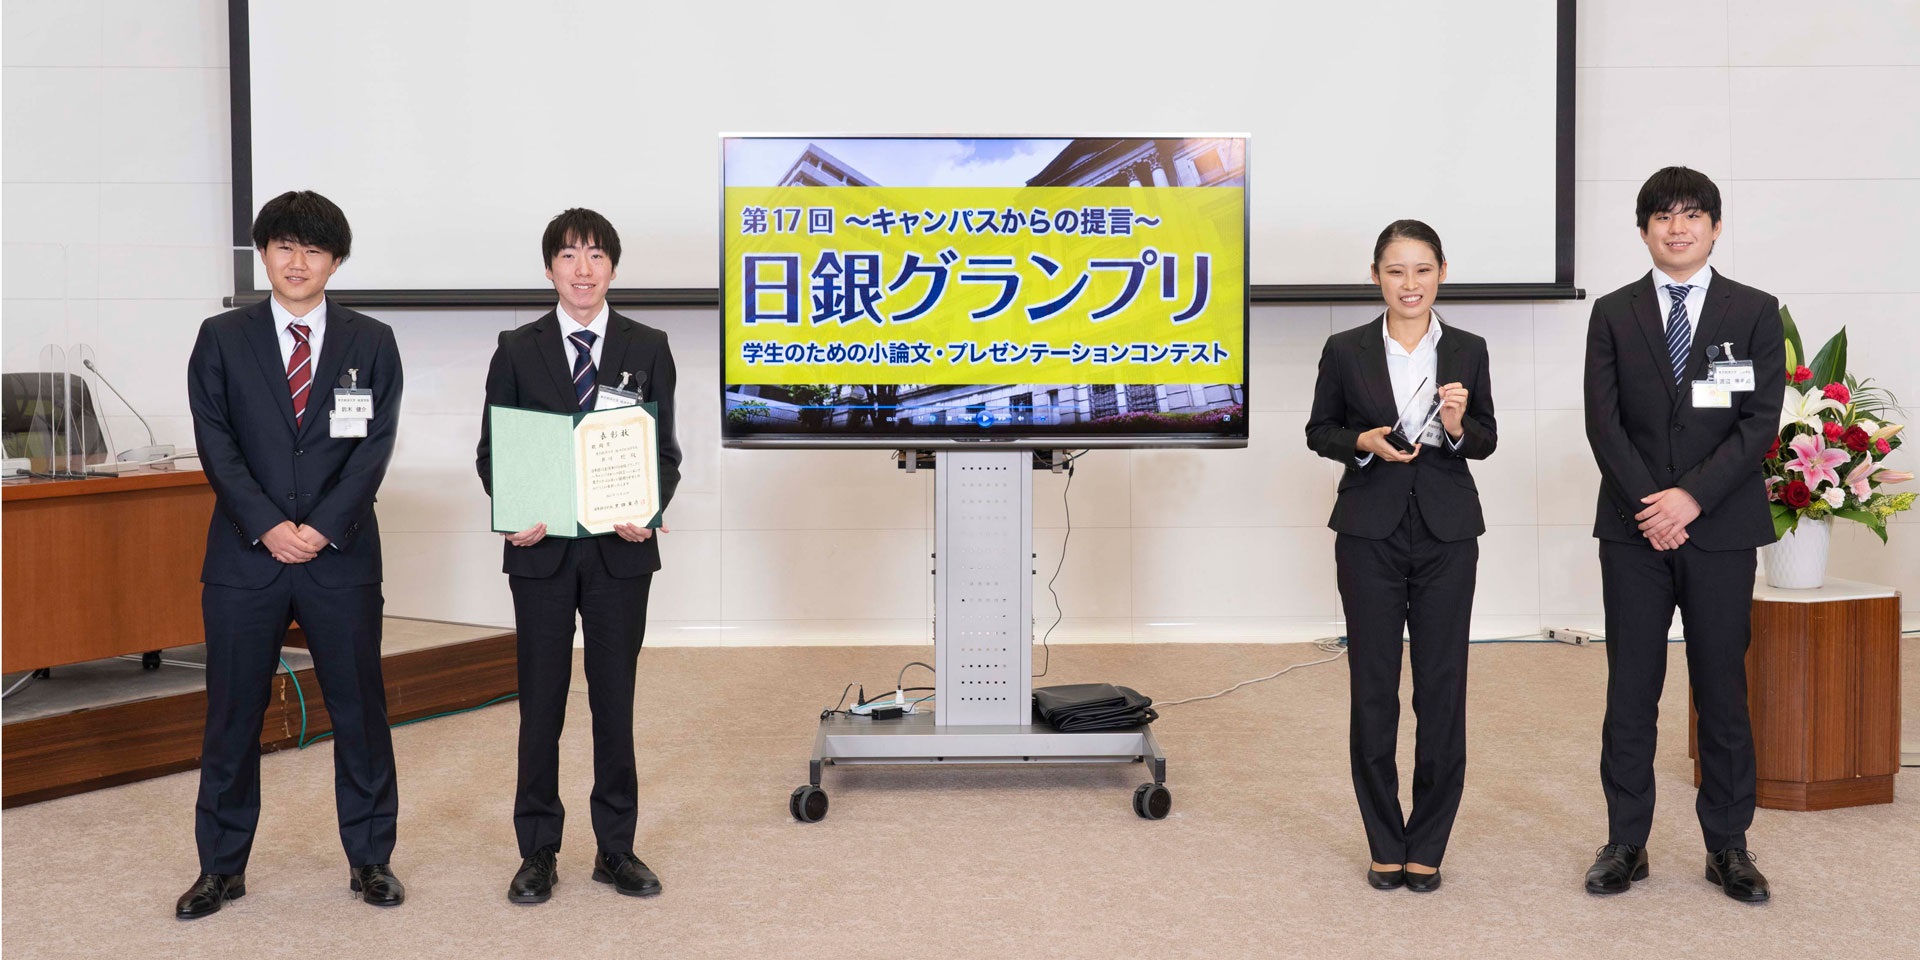 東京経済大学チームの学生4人が、間隔を空けて横一列に起立して記念撮影している様子